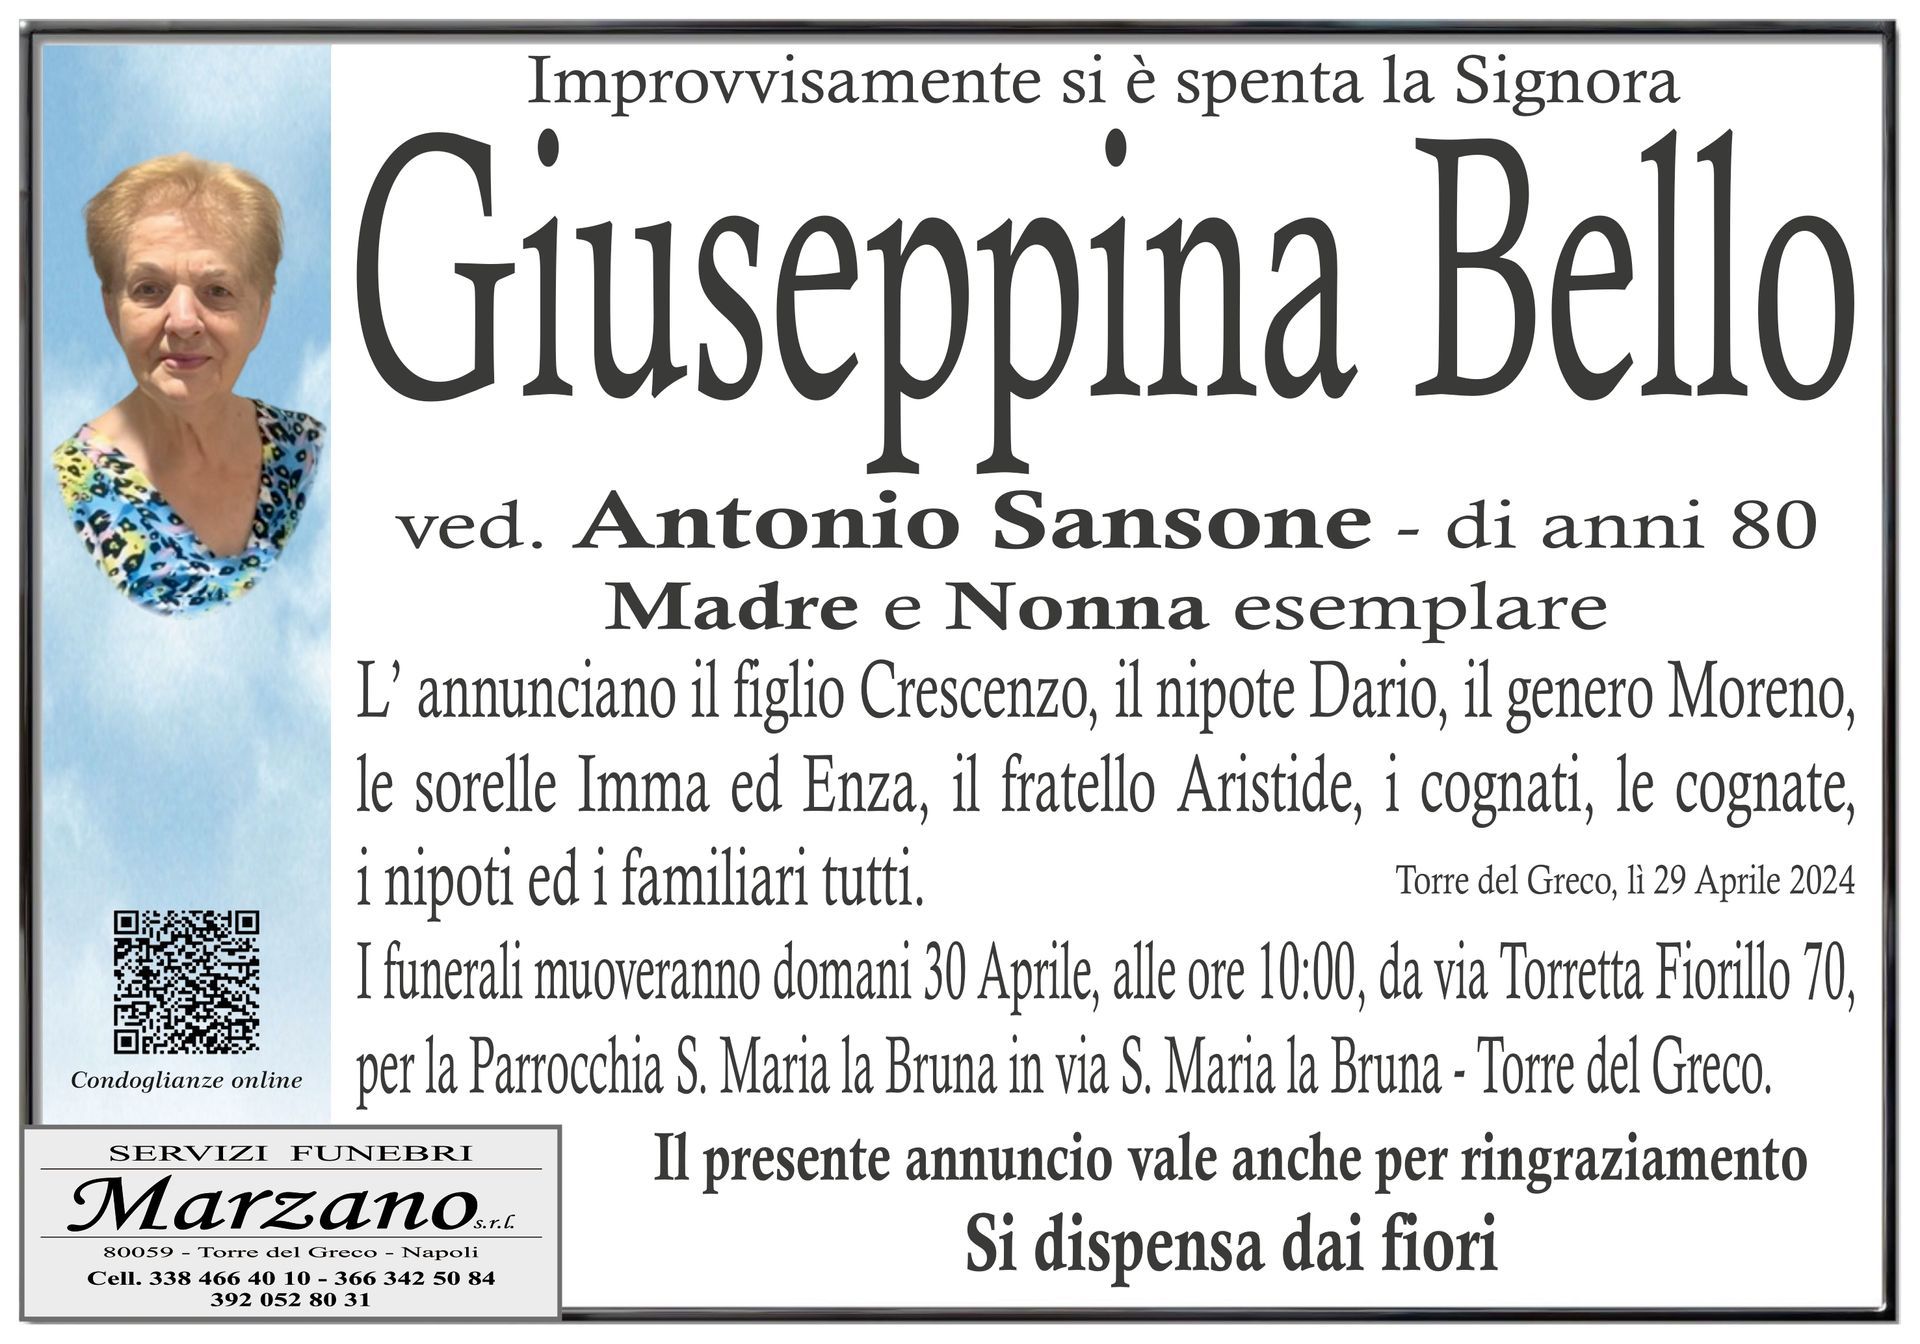 Giuseppina Bello